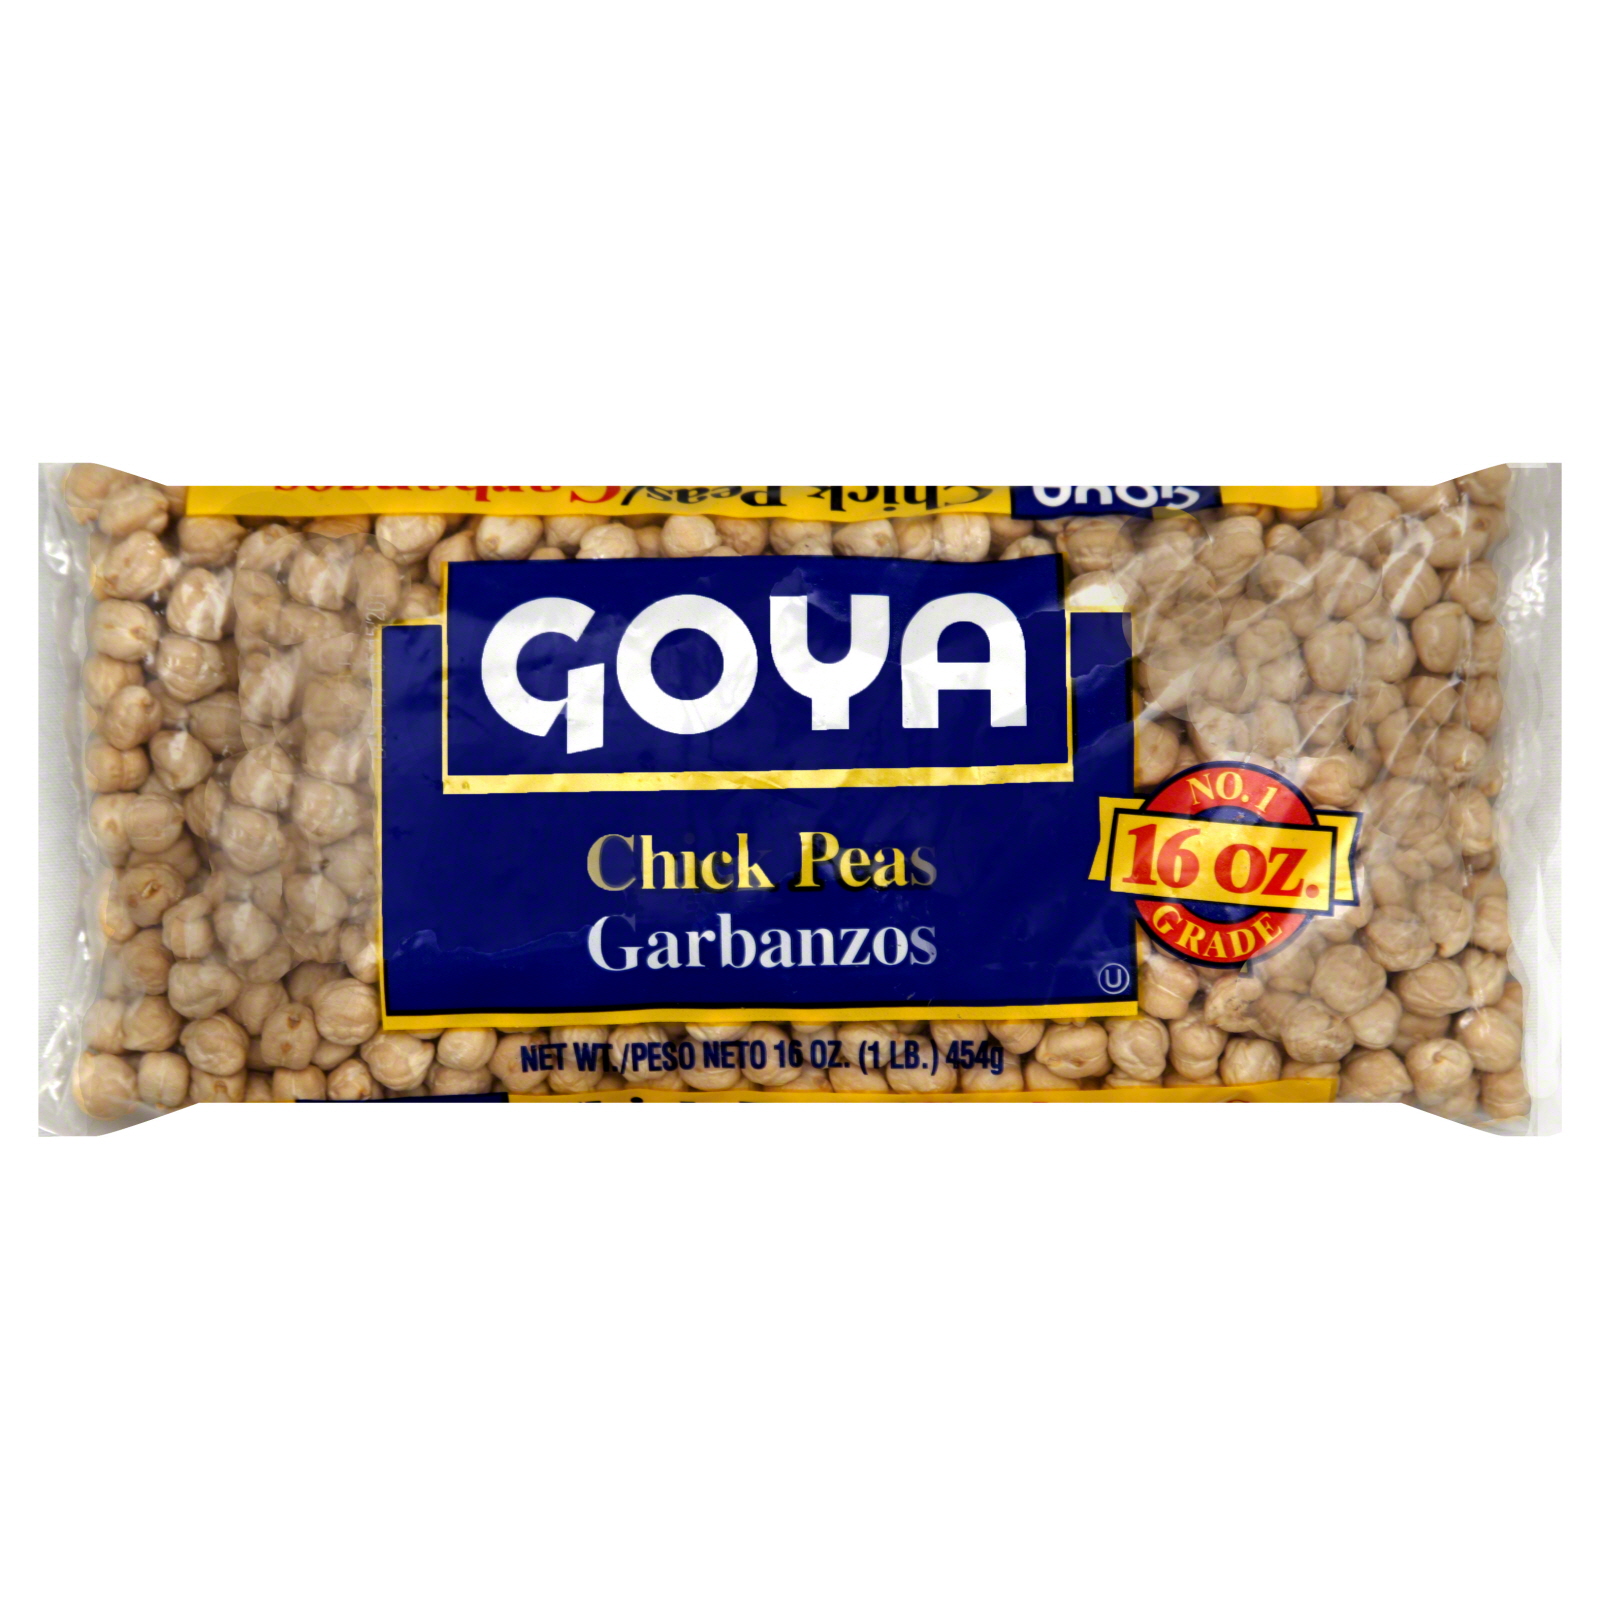 Goya Chick Peas, Garbanzos, 16 oz (1lb) 454 g